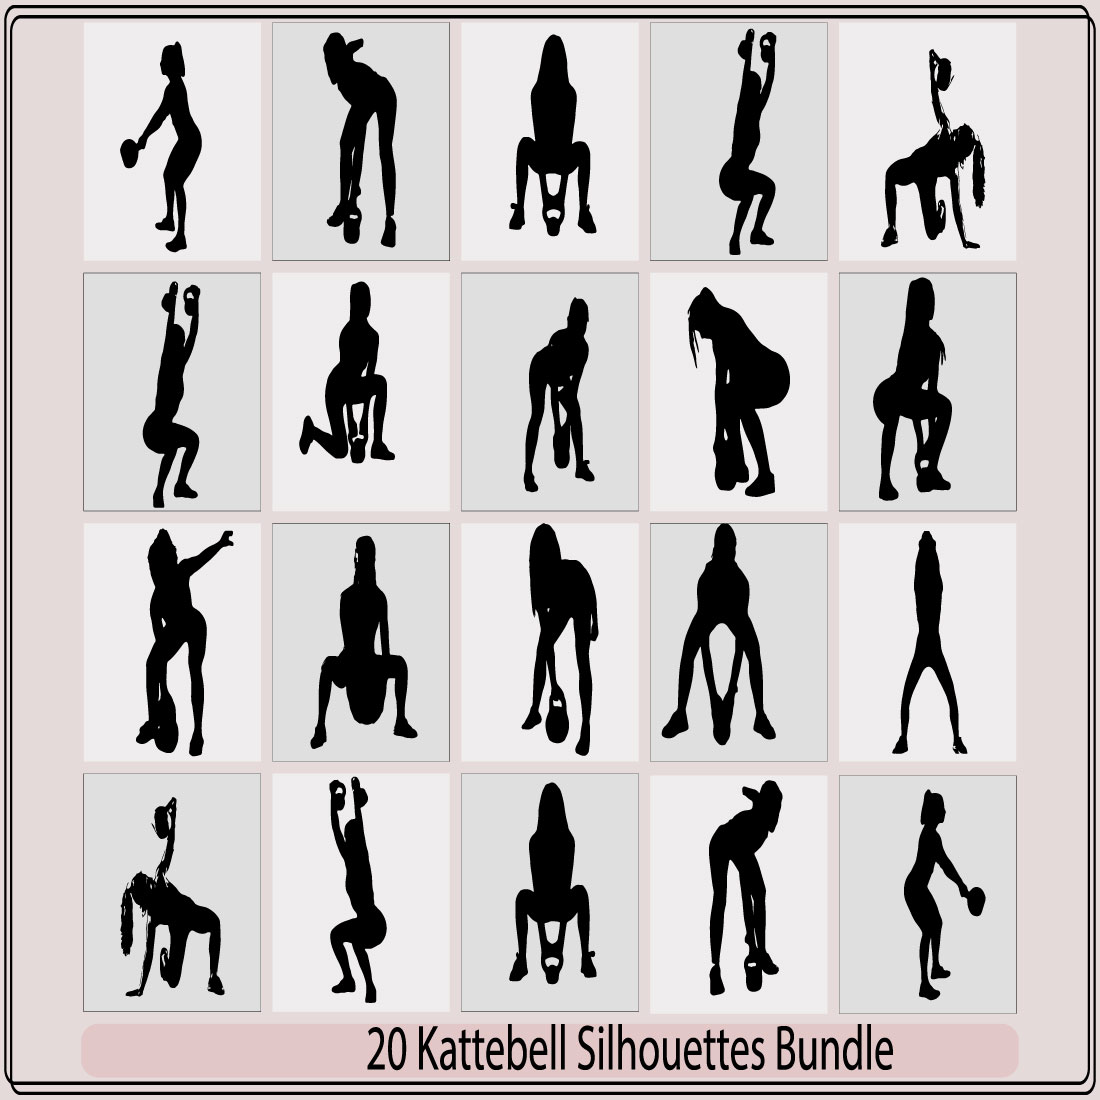 kattlebell silhouette,kattlebell silhouette bundle,kattlebell illustration,kattlebell vector, preview image.